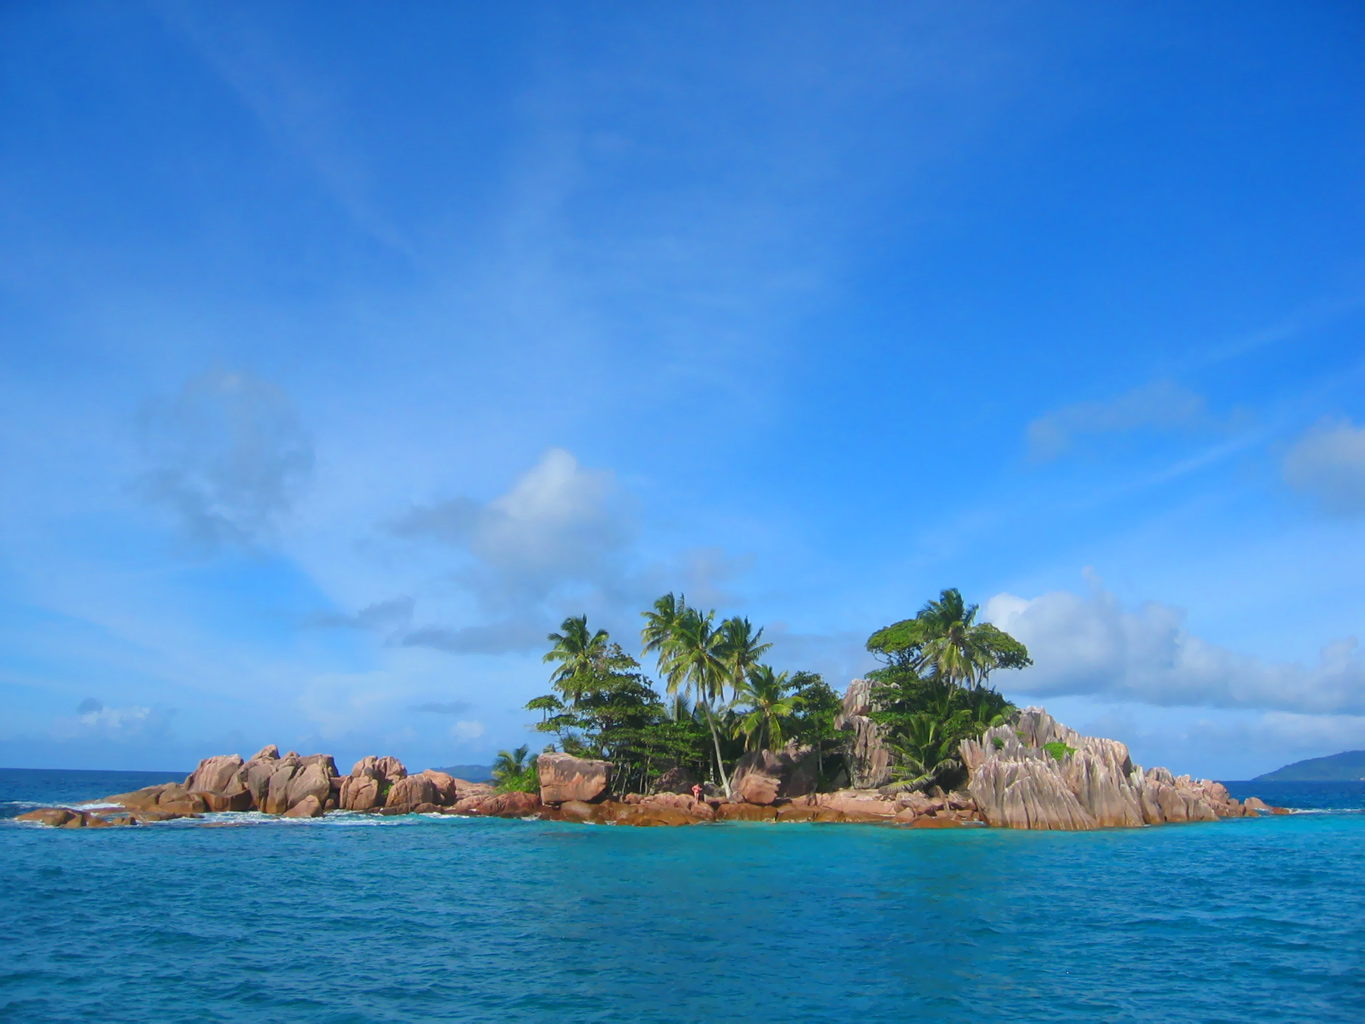 Island galleries. Пейзаж острова. Остров Гуам. Мальдивы пейзаж. Обои 1024 768 острова.